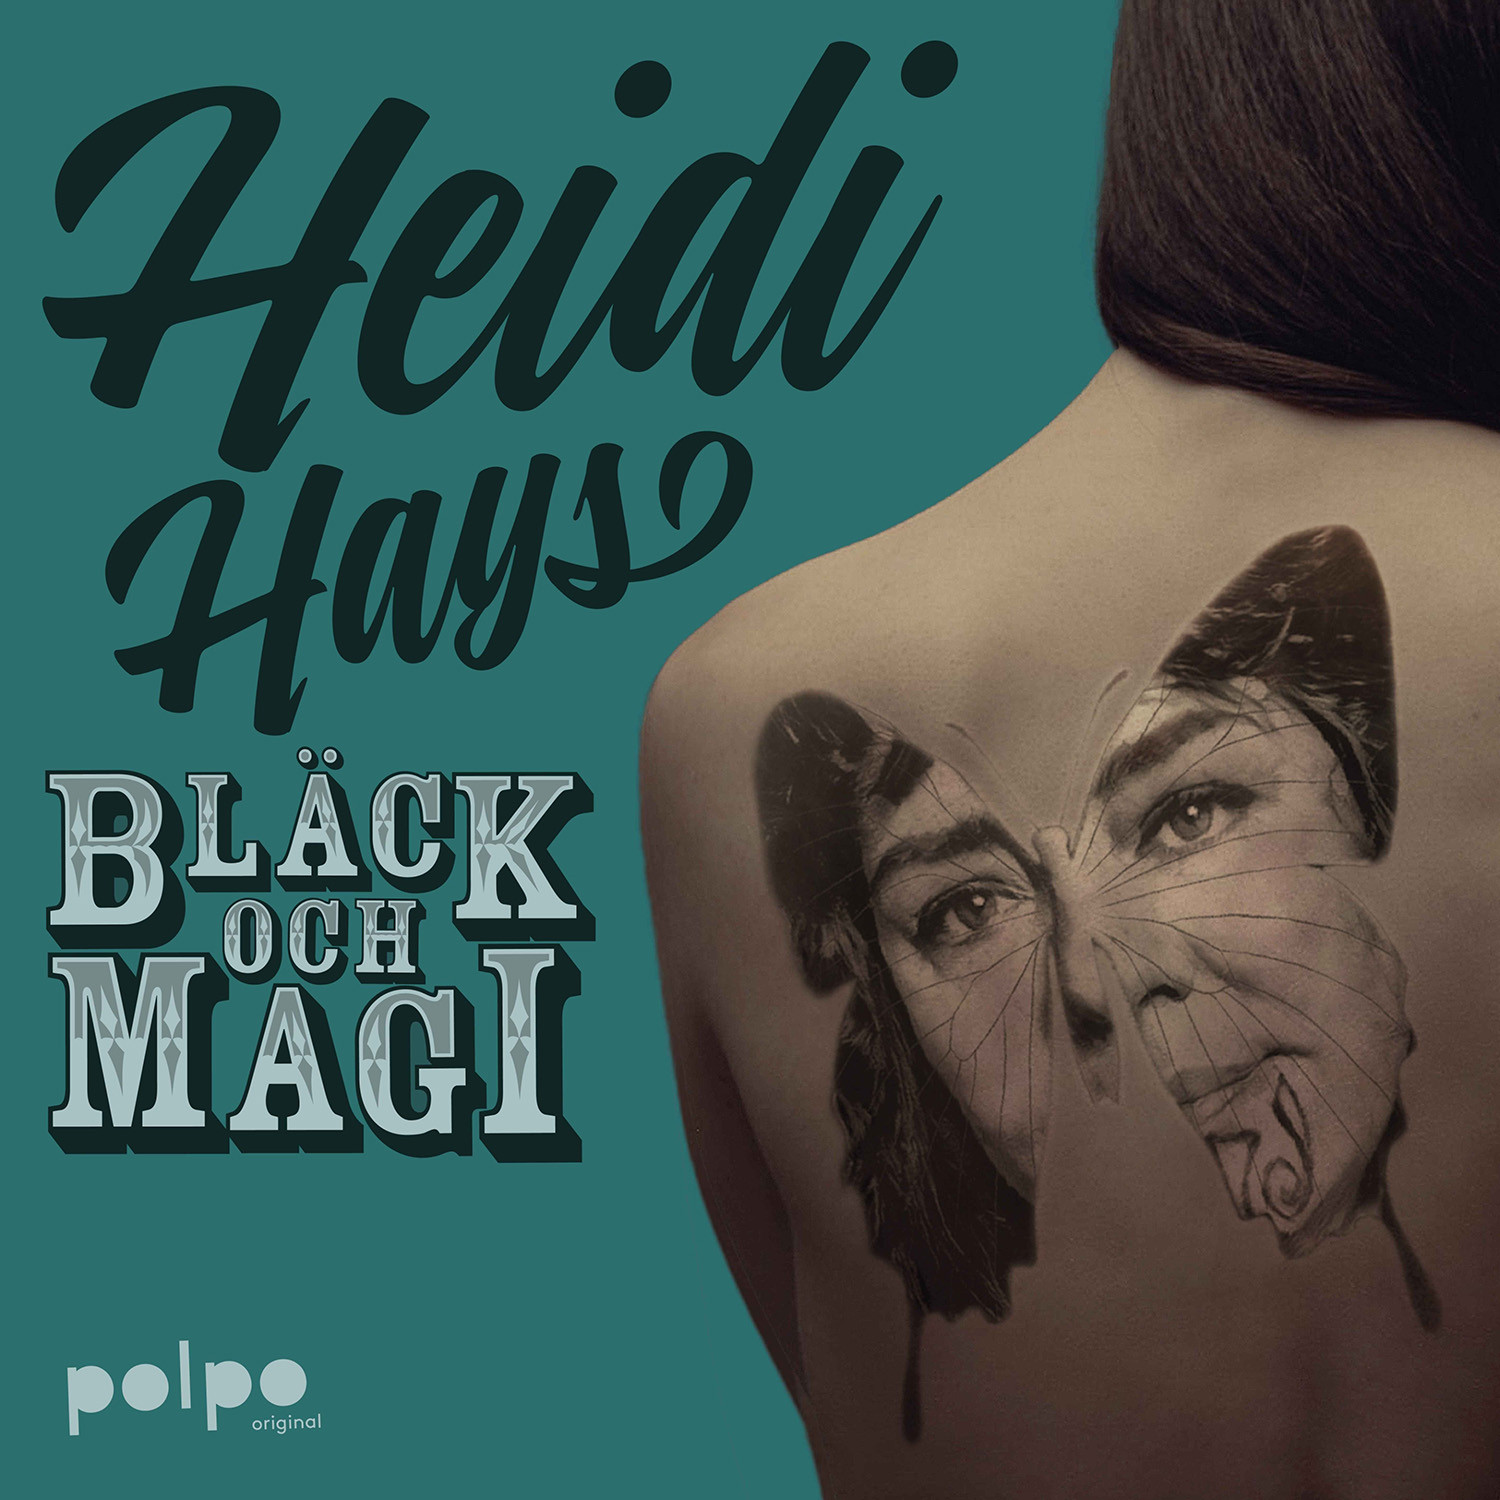 Heidi-Hays-Black-och-Magi-1500×1500-1